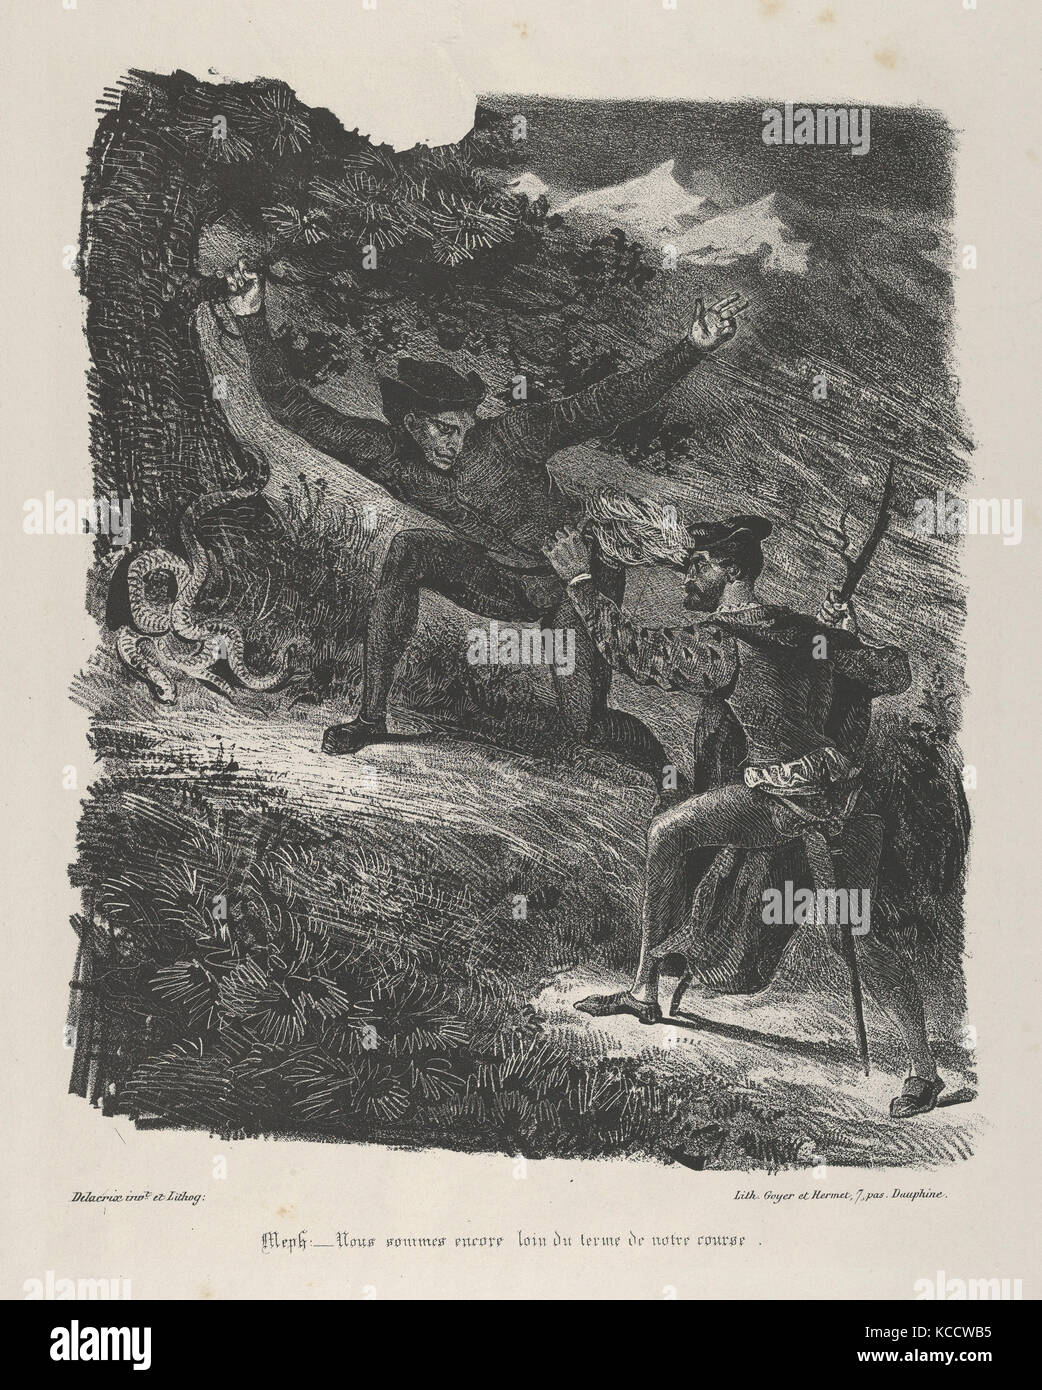 Faust e Mephistopheles Hartz Montagne (Goethe, Faust), Eugène Delacroix, 1825-27 Foto Stock